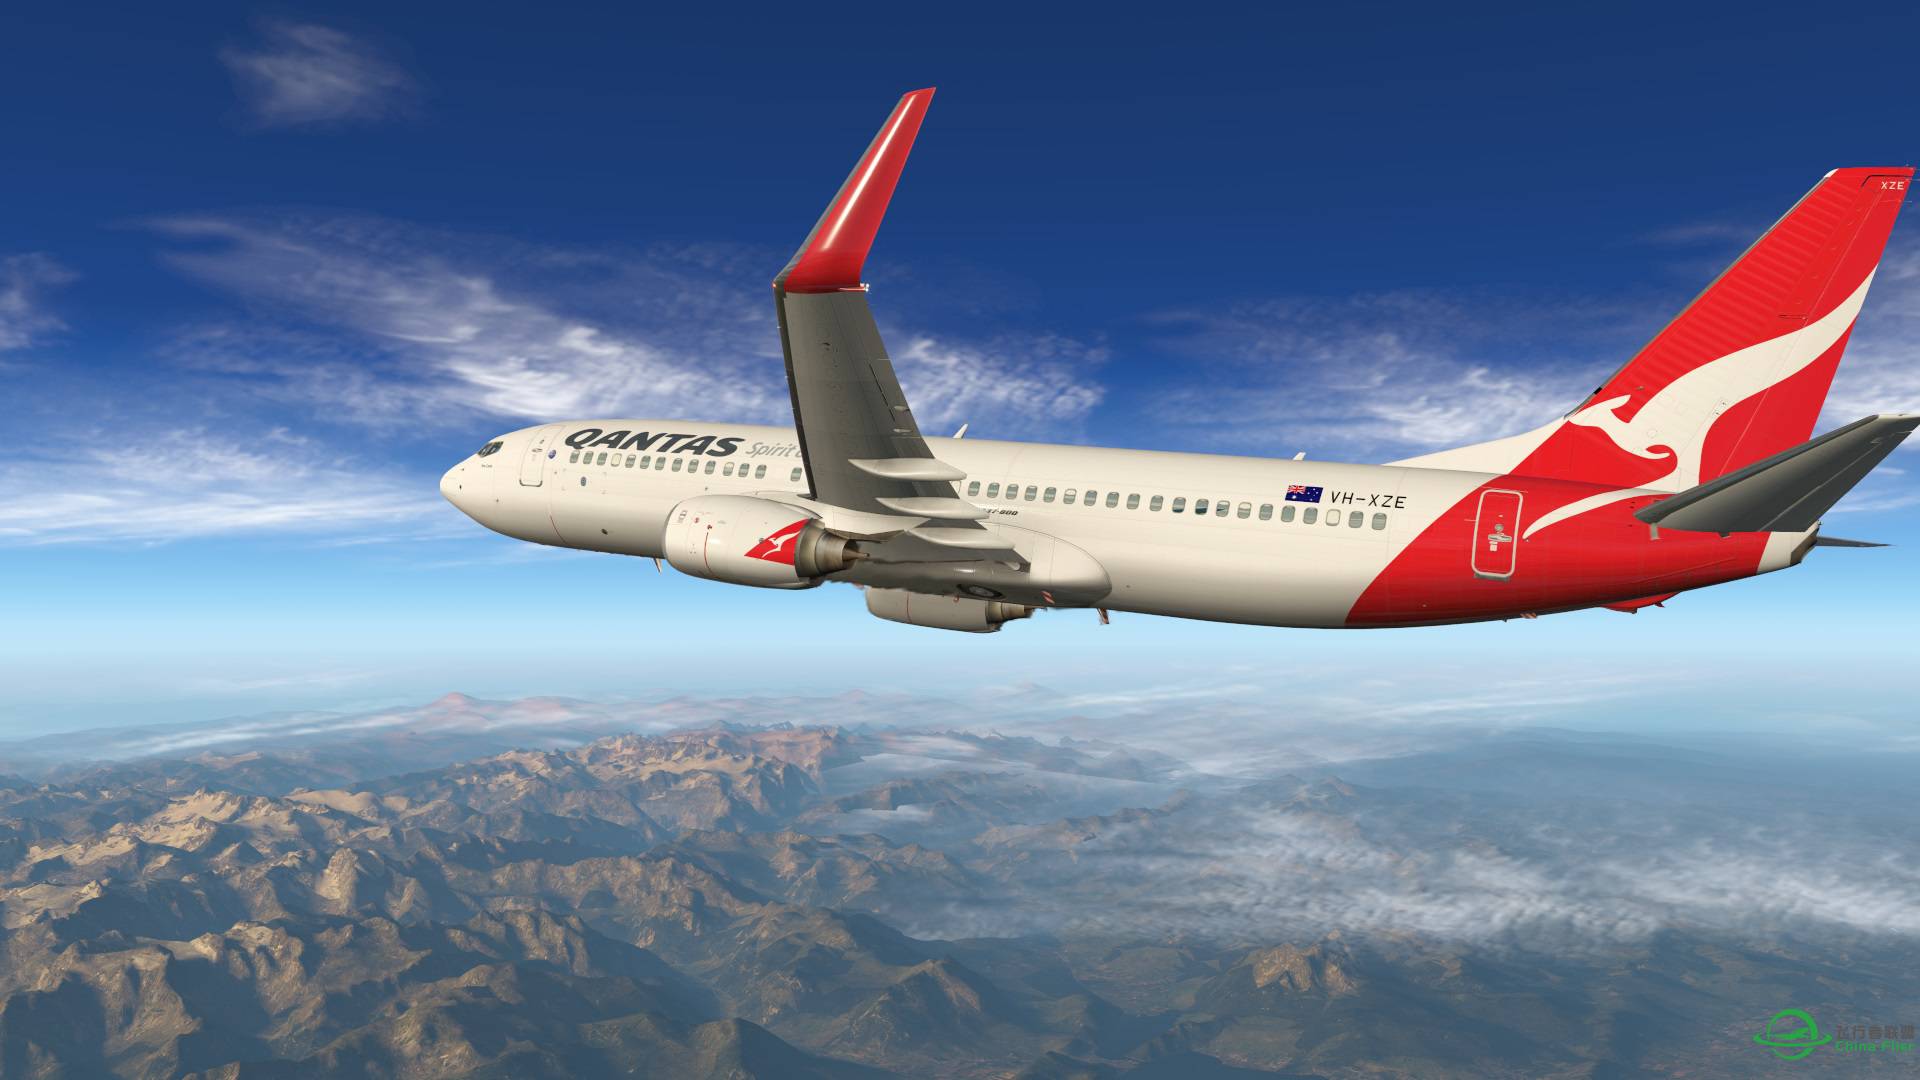 飞跃阿尔卑斯山 X-plane 11-8110 